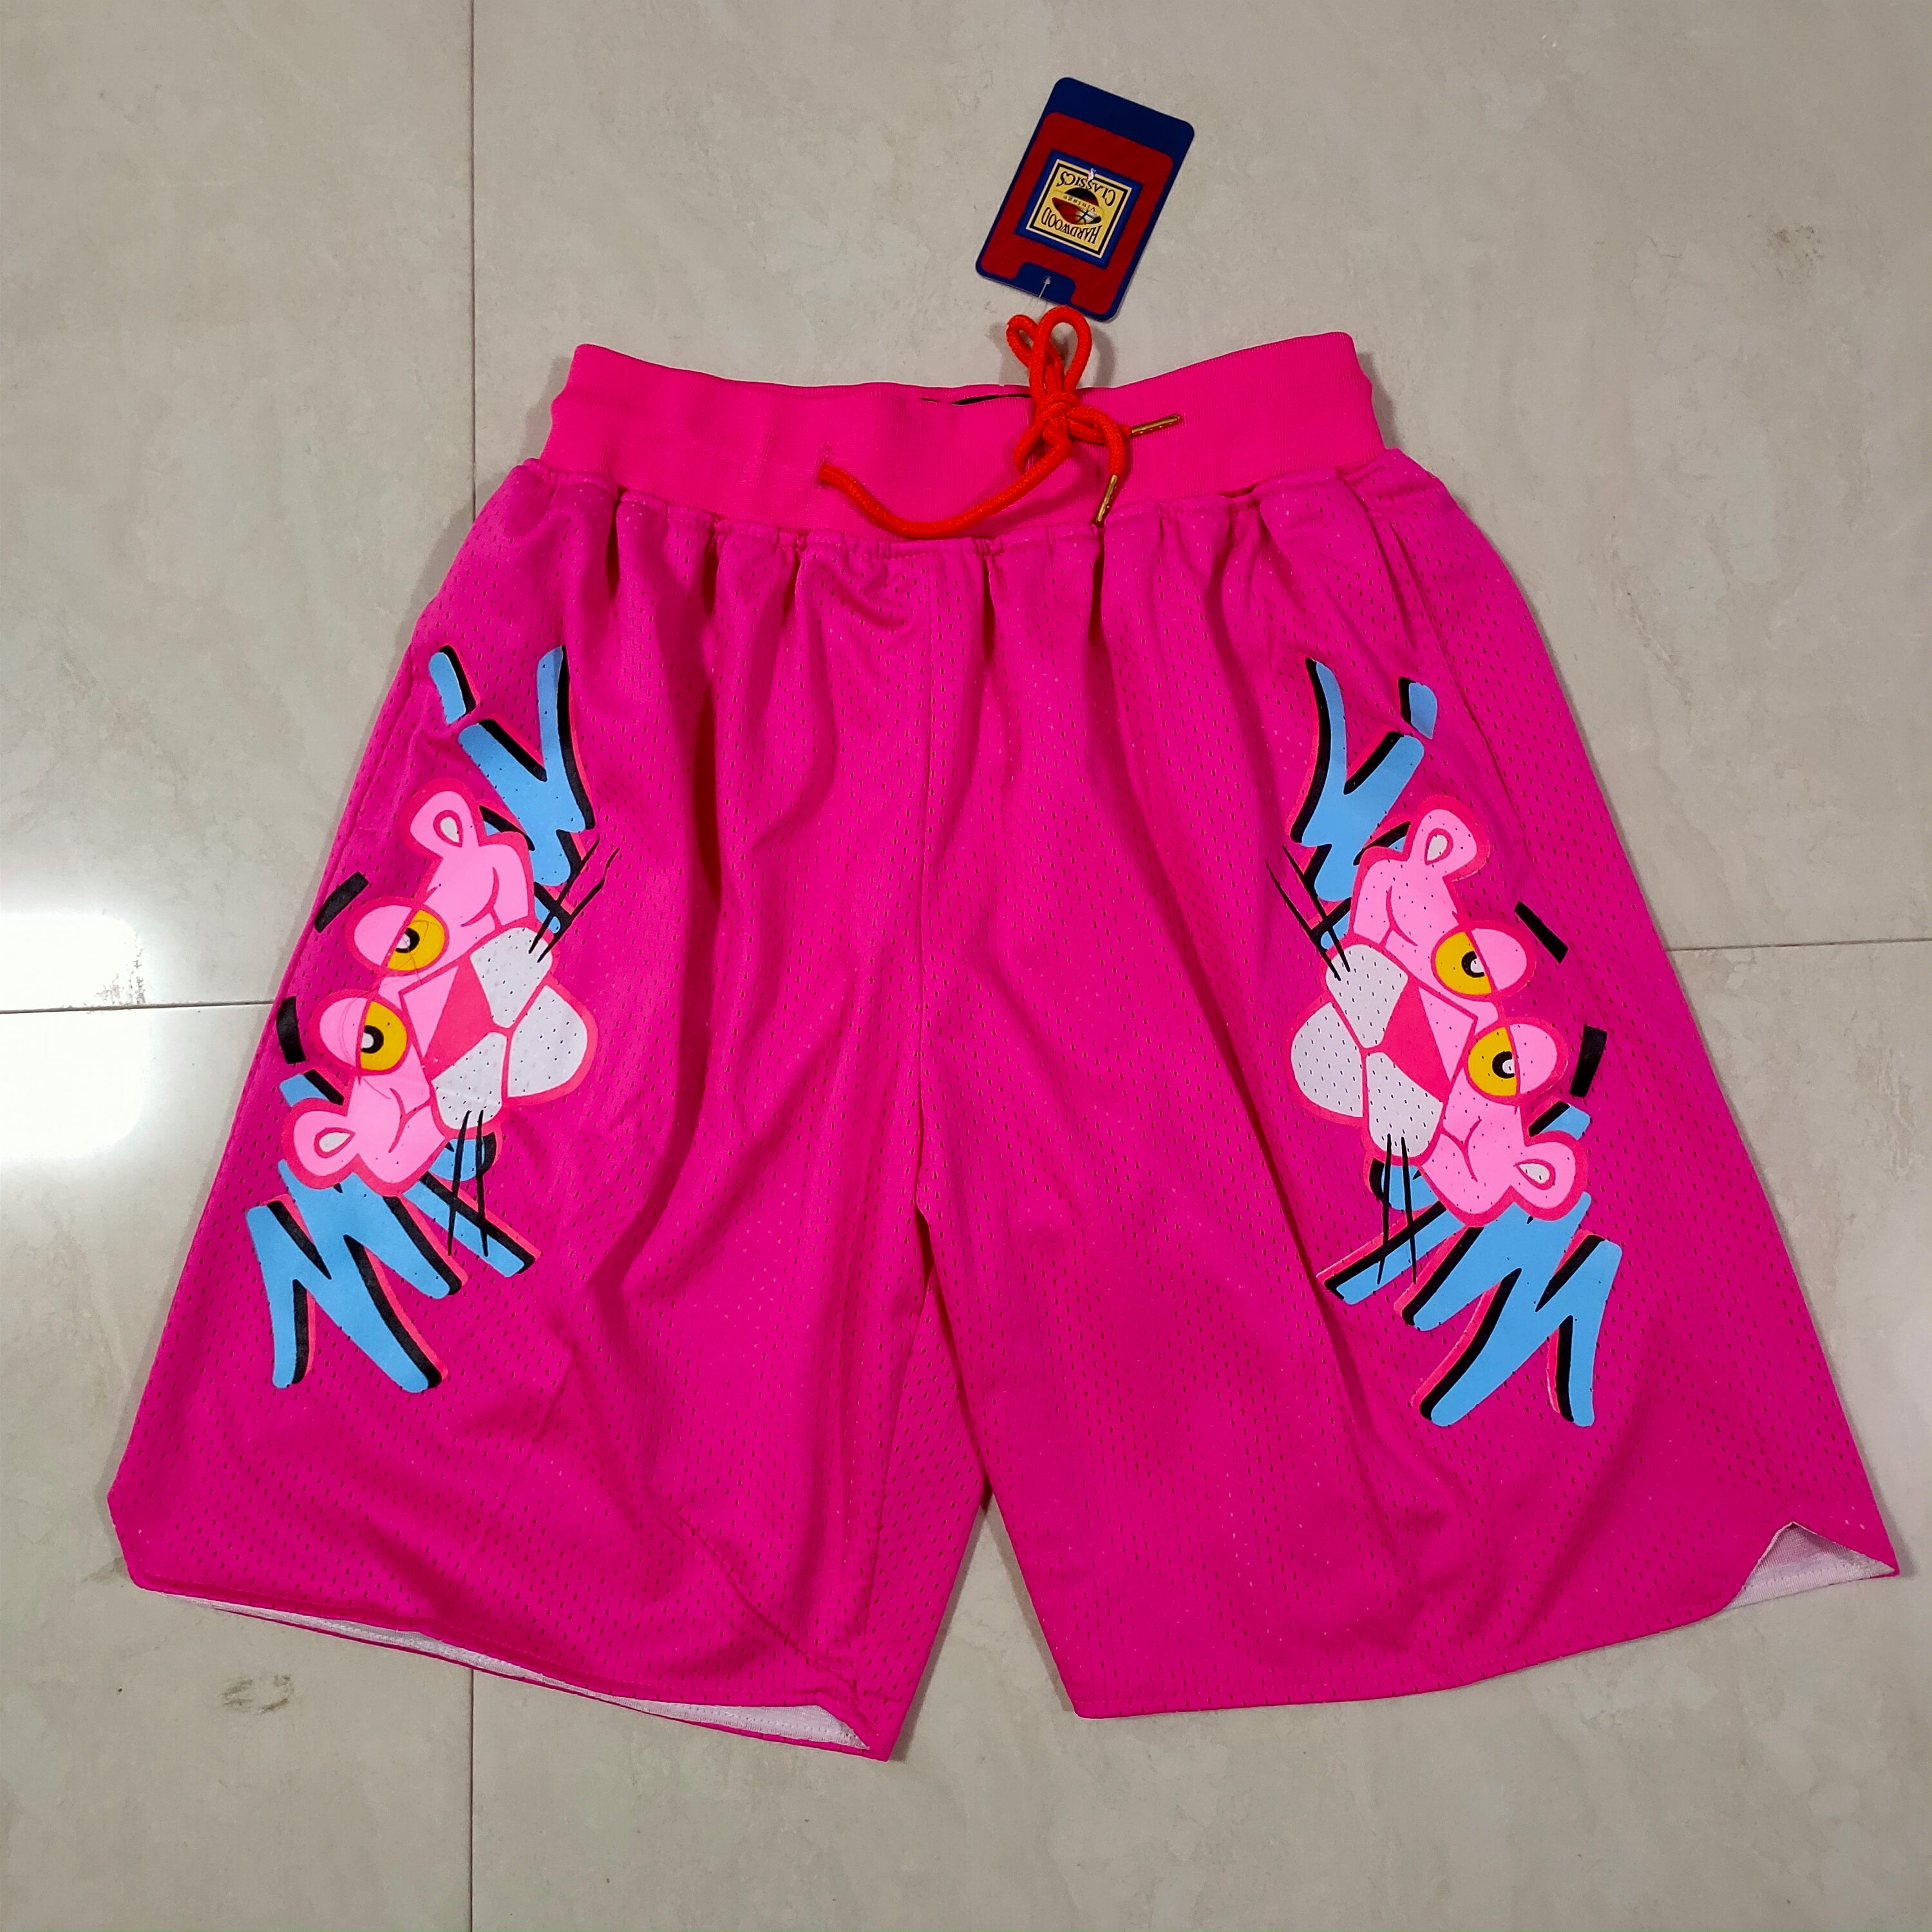 Miami pink panther pink shorts